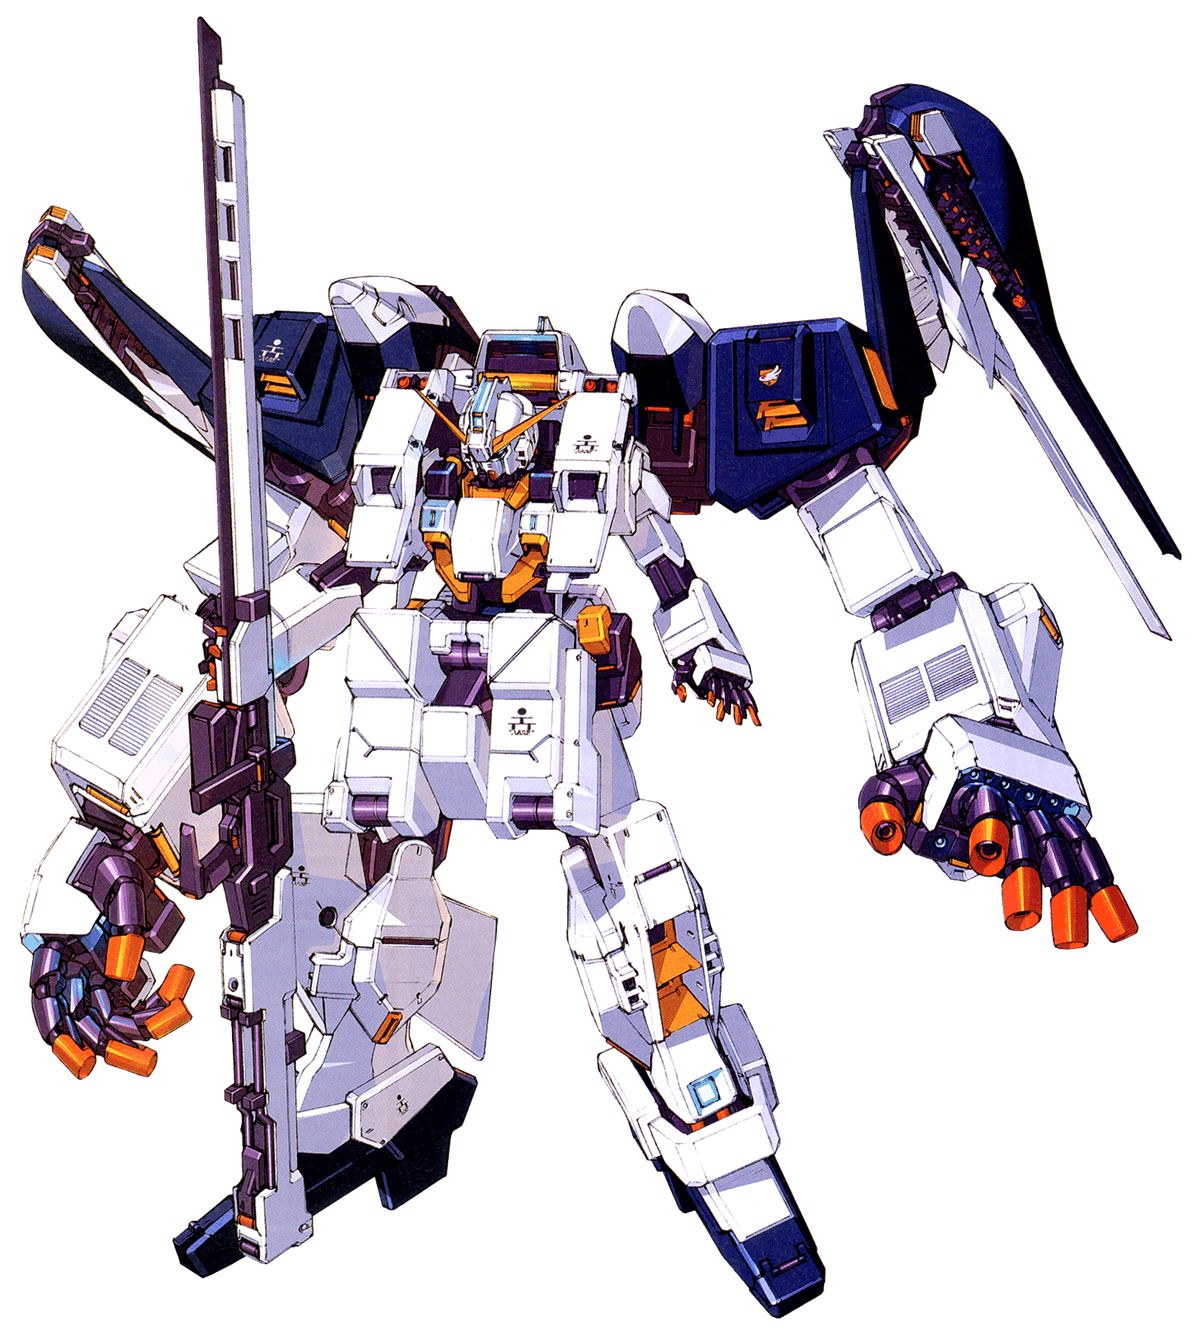 RX-121-2 Gundam TR-1 (Hazel Owsla) - One of the most Underrated Gundams